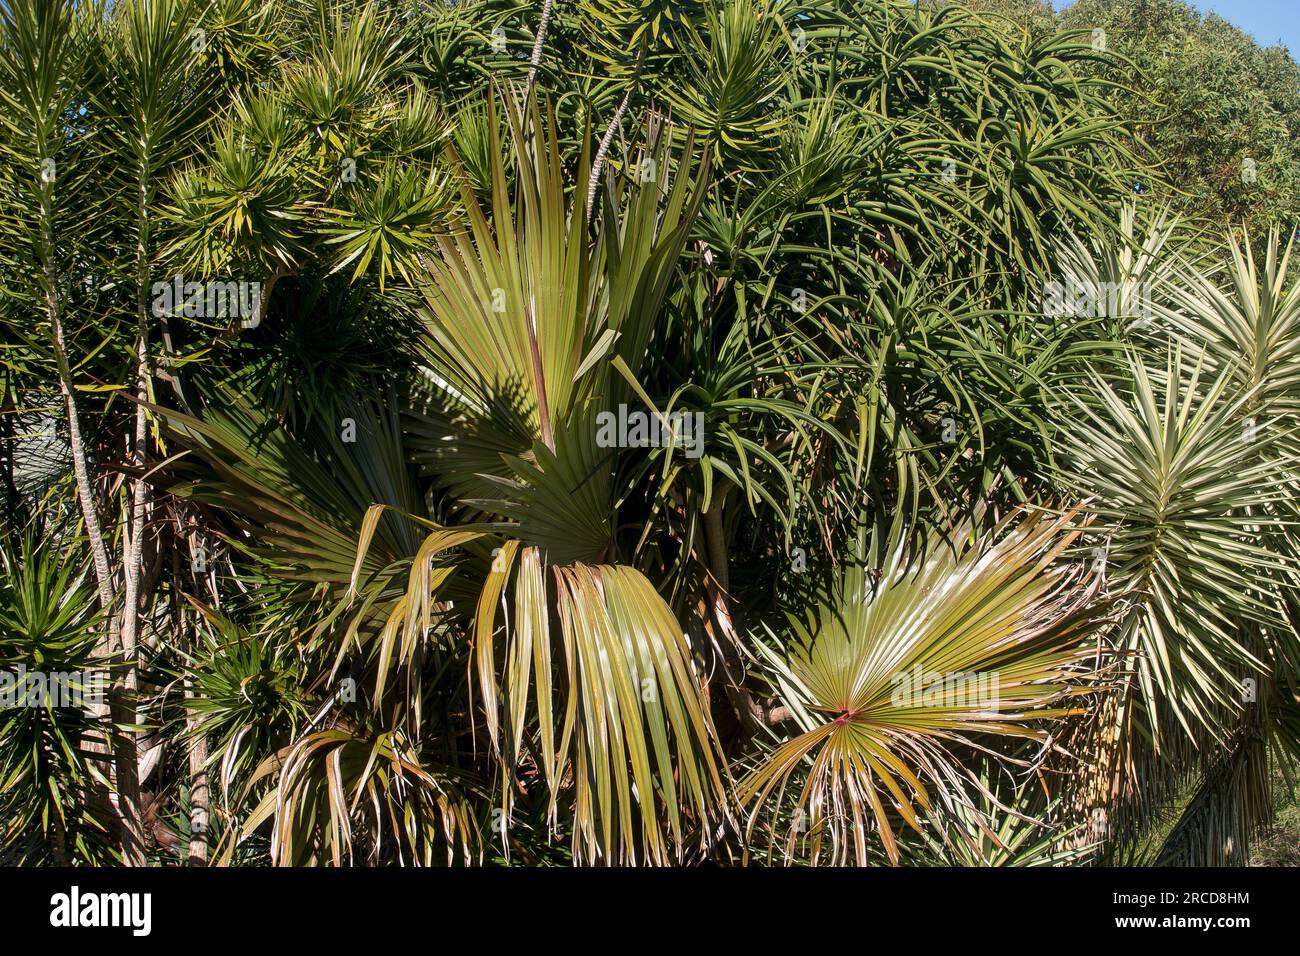 Piante verdi miste nel giardino privato subtropicale australiano nel Queensland. Miscuglio di specie autoctone ed esotiche di alberi e arbusti. Foto Stock